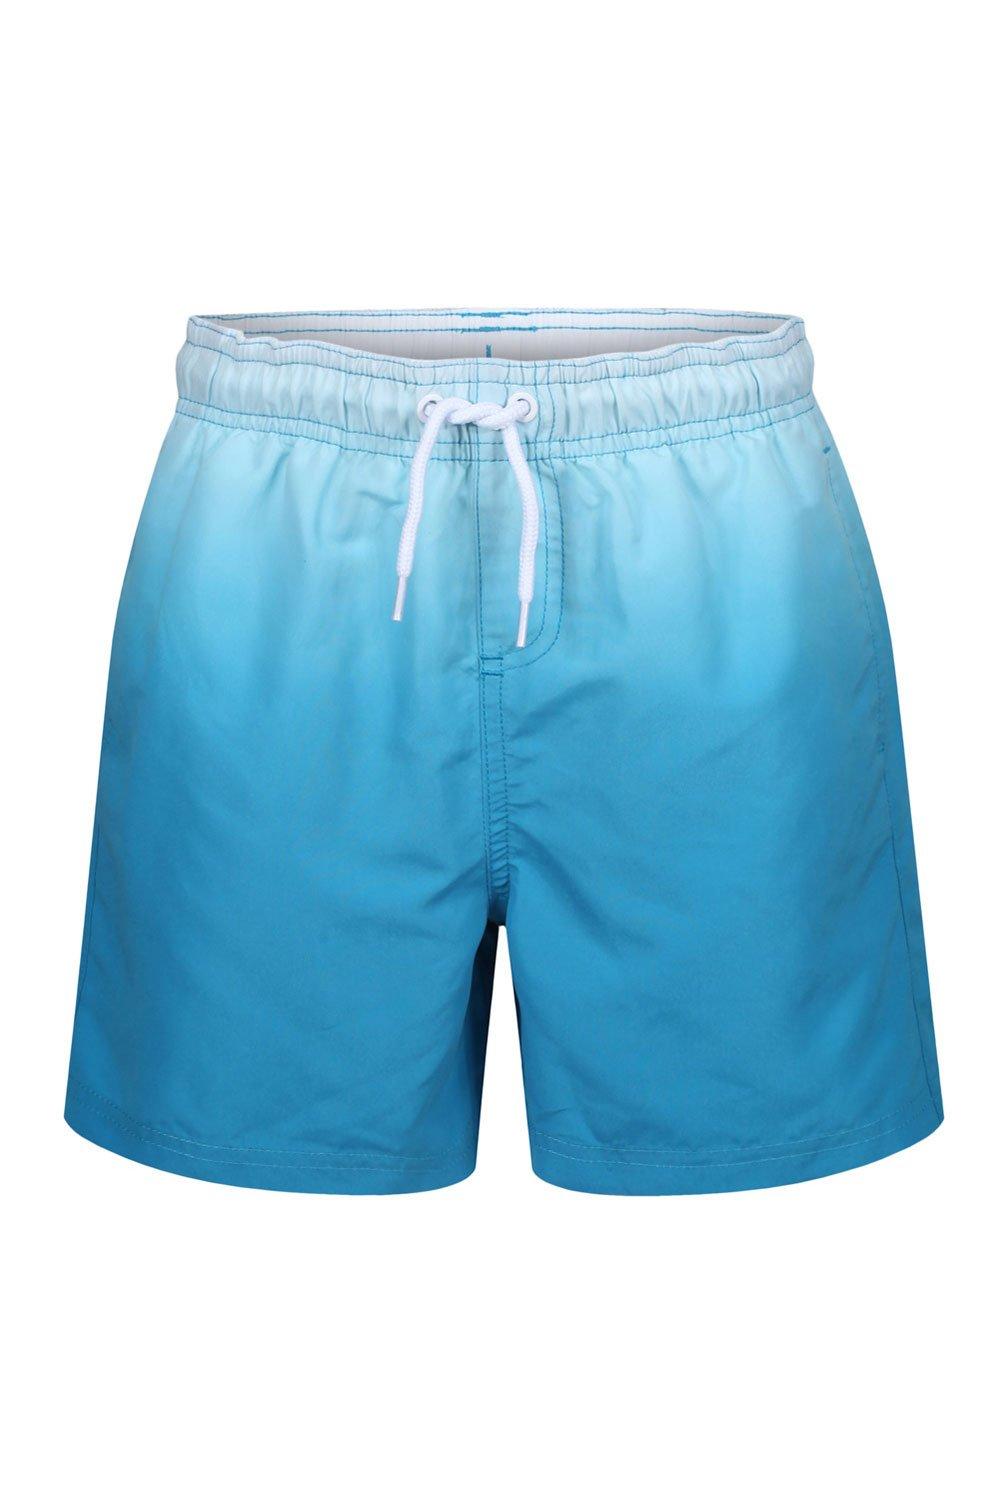 Dip Dye Ombre Swim Shorts